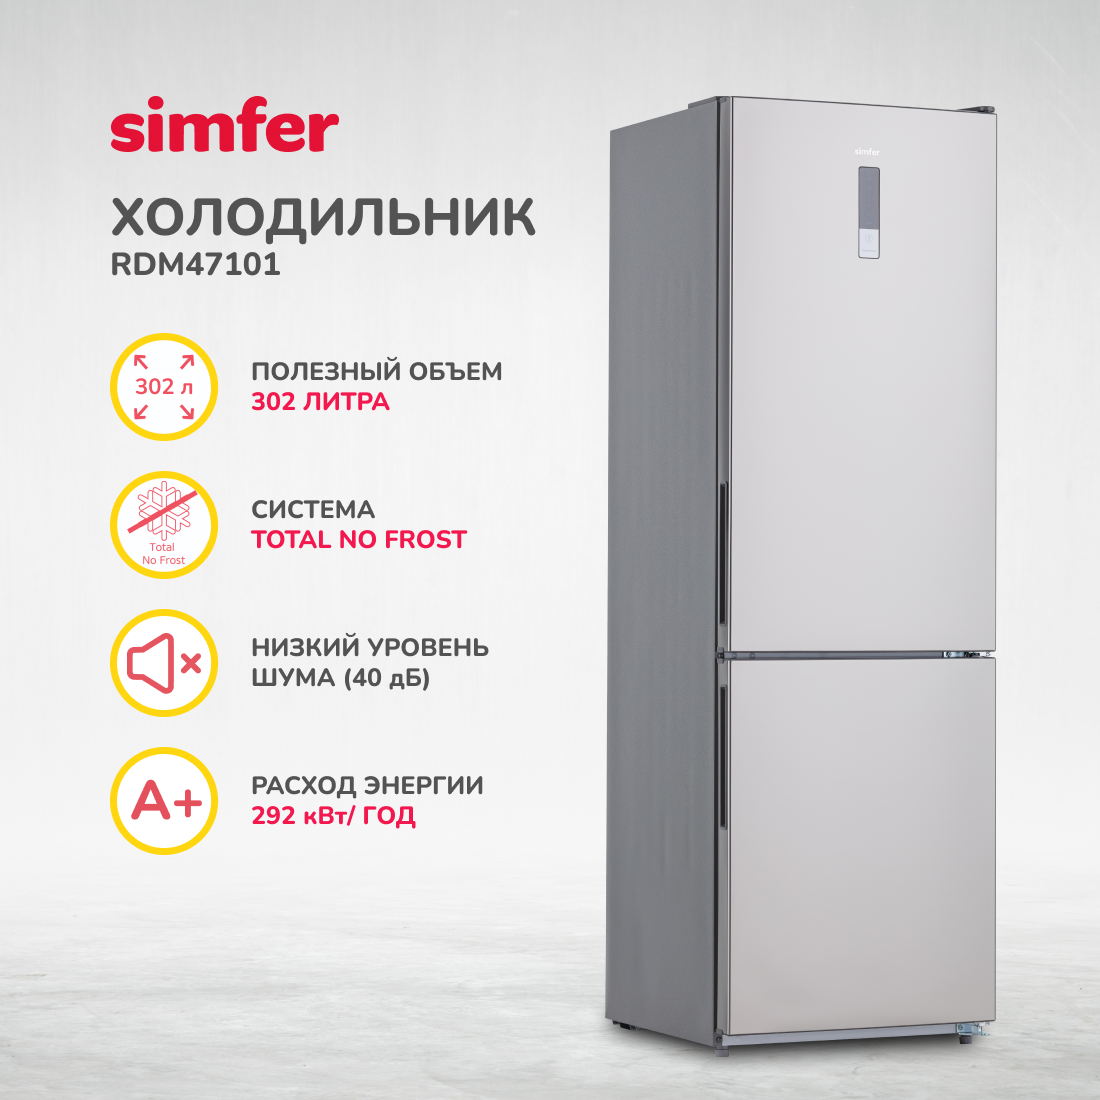 Холодильник Simfer RDM47101, No Frost, двухкамерный, 302 л холодильник simfer rdw49101 no frost двухкамерный 321 л